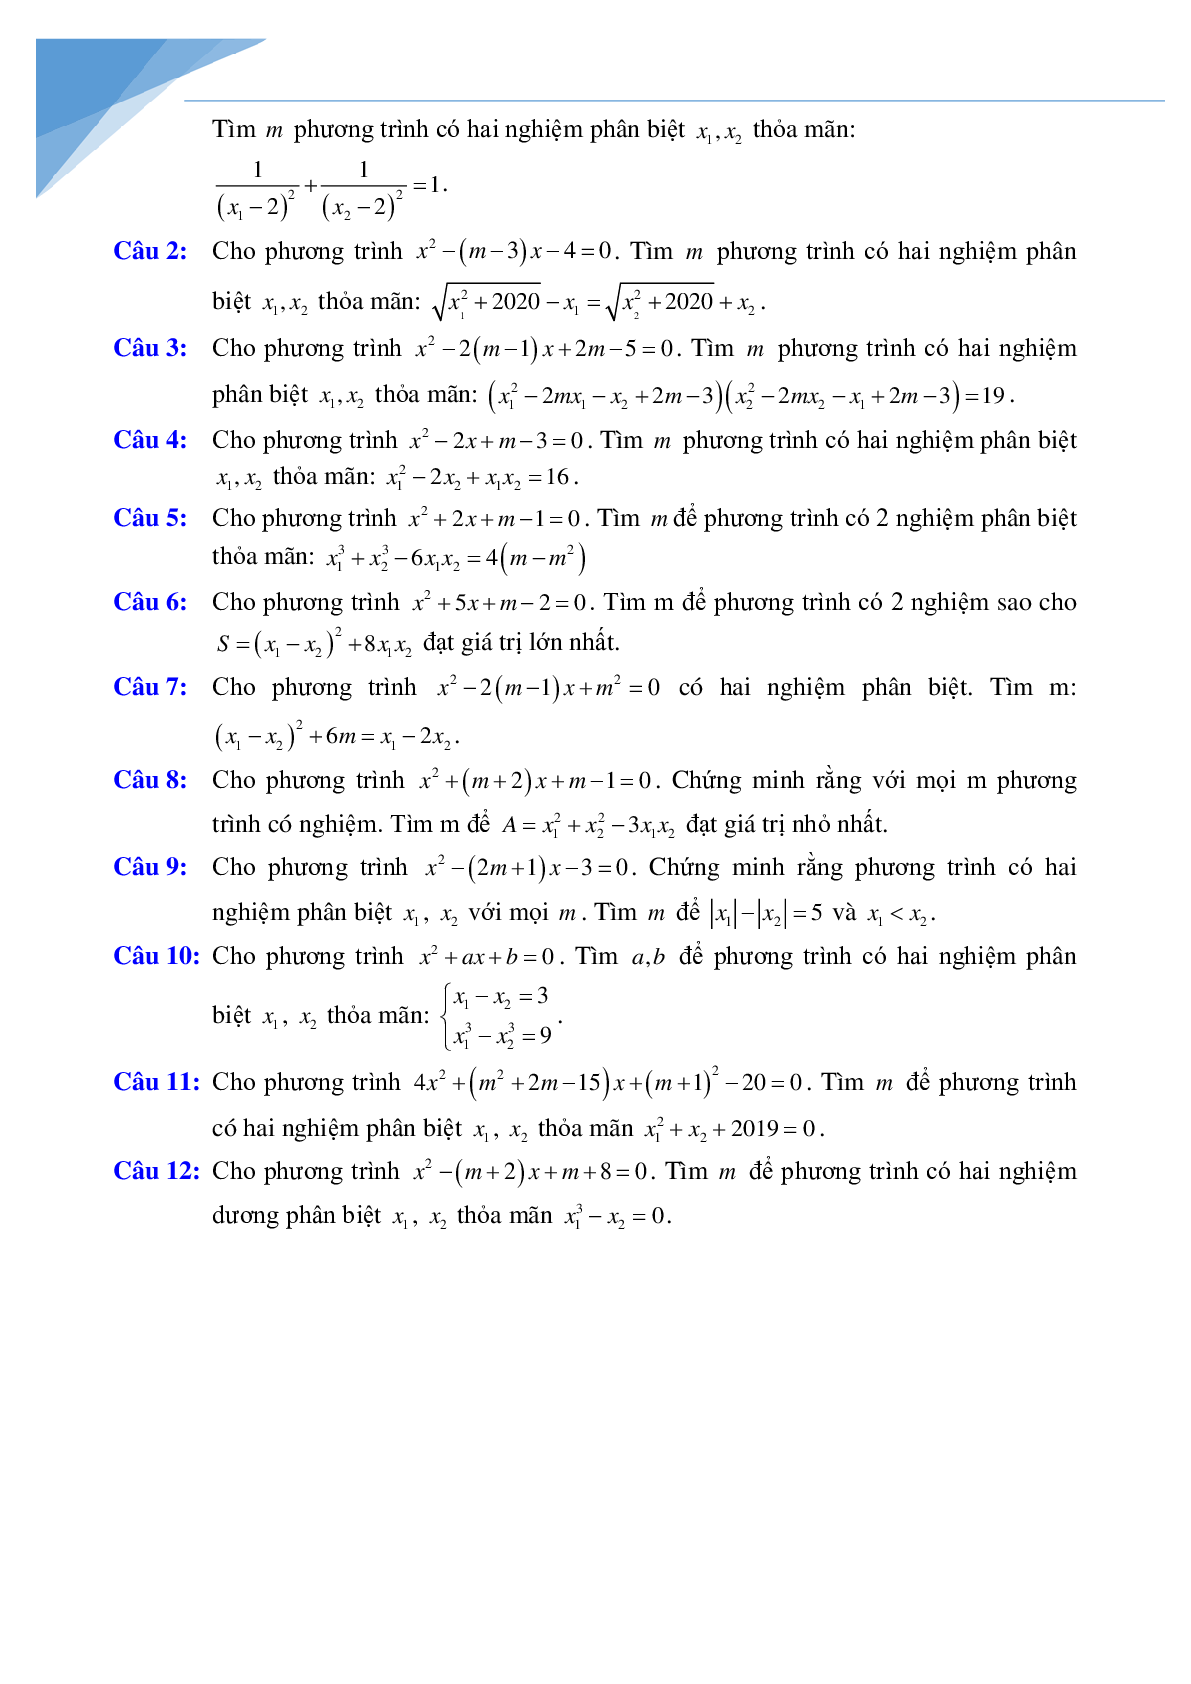 Chuyên đề vi-et luyện thi vào lớp 10 môn toán (trang 3)